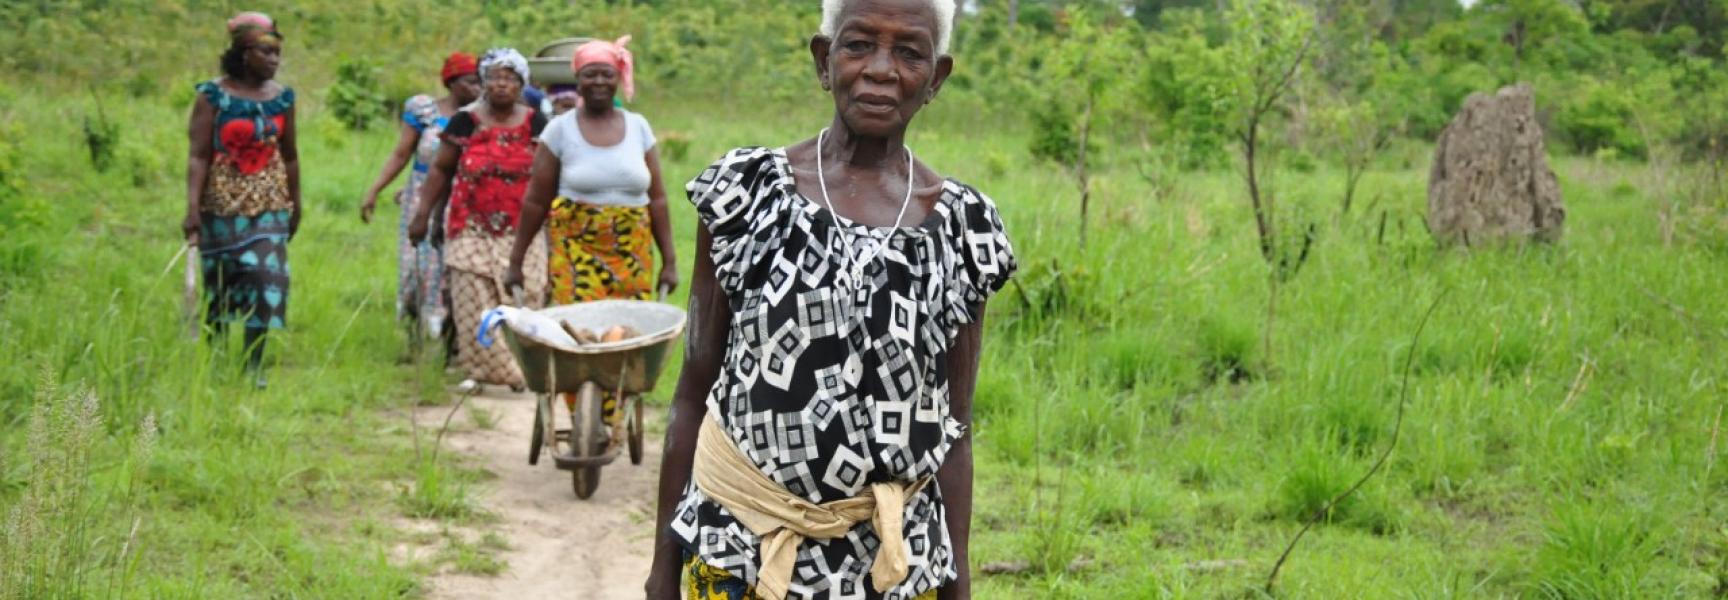 Mujeres rurales en Cote d'Ivoire